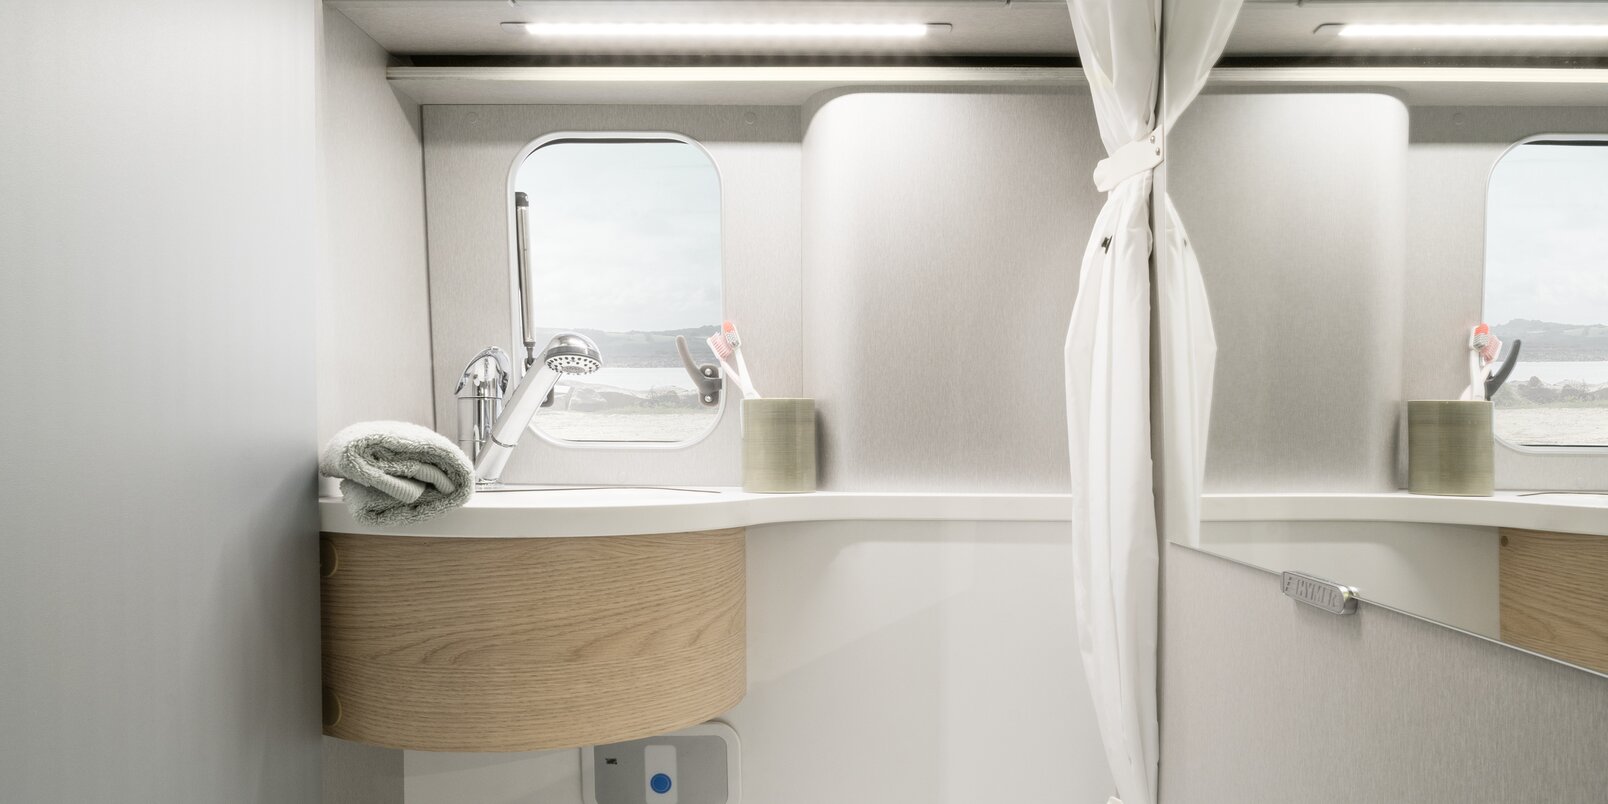 Toilette, lavandino, specchio, tenda doccia, scomparto d’appoggio e finestra nel bagno compatto del Free HYMER